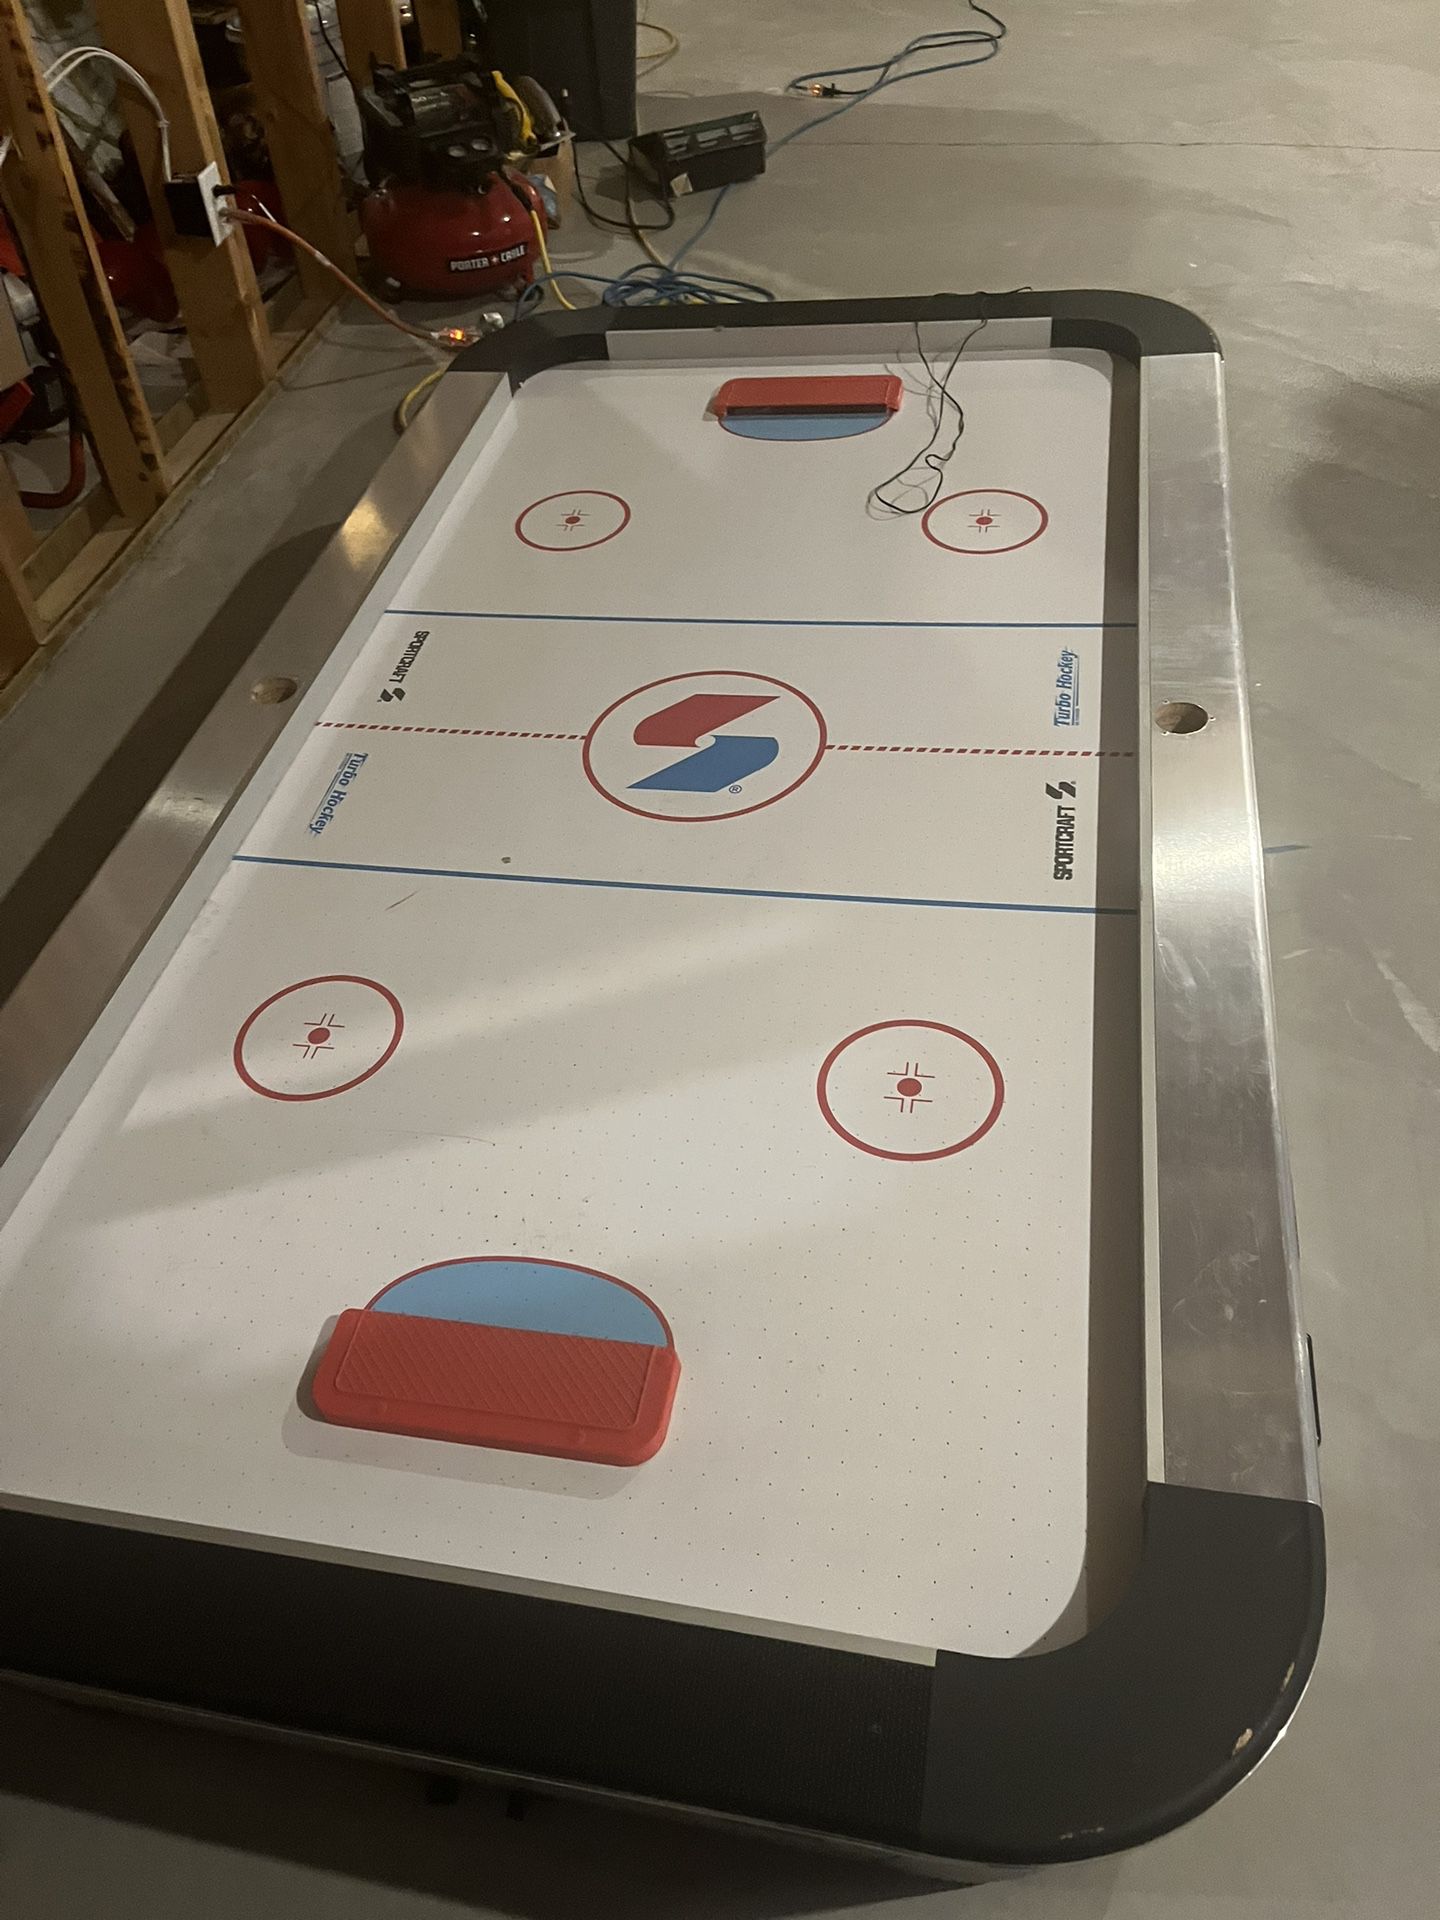 The Arcade Style Air Hockey